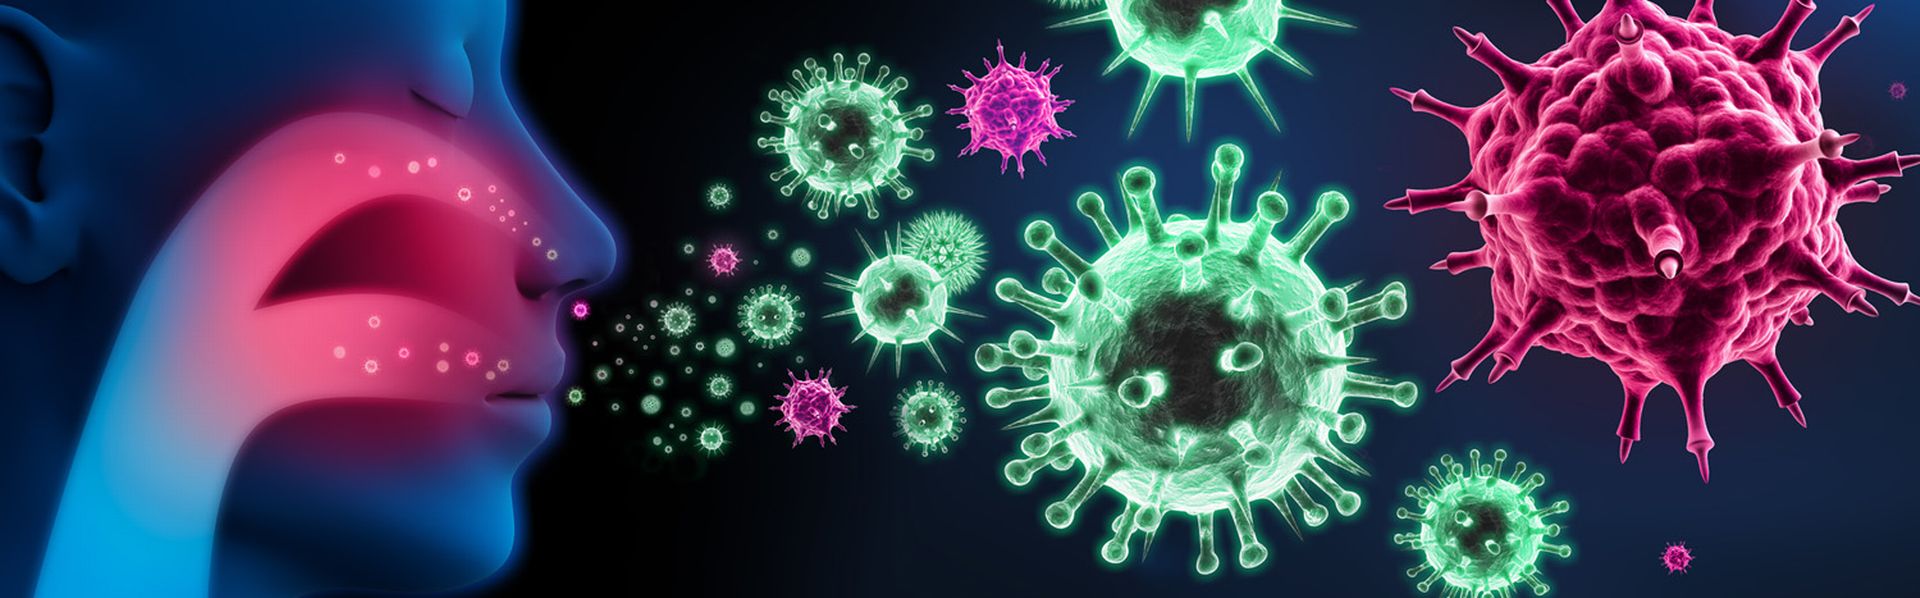 Le virus de la grippe [© psdesign1 - Fotolia]